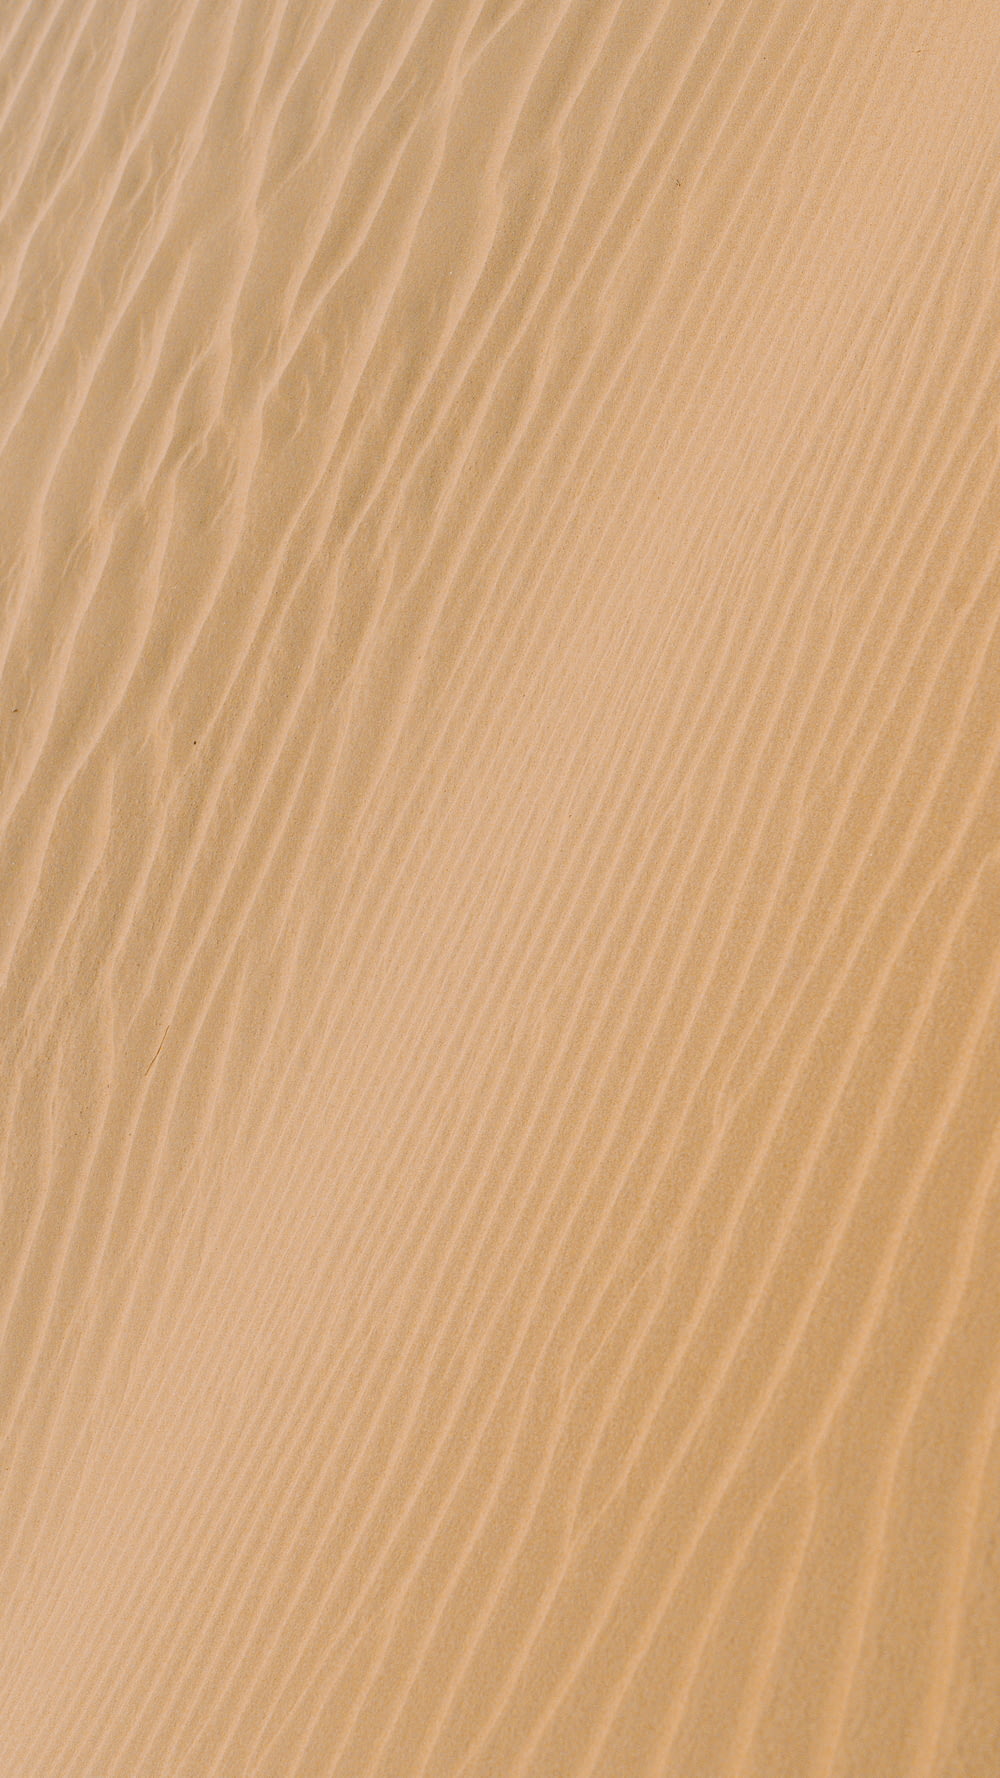 sabbia bianca con ombra di persona